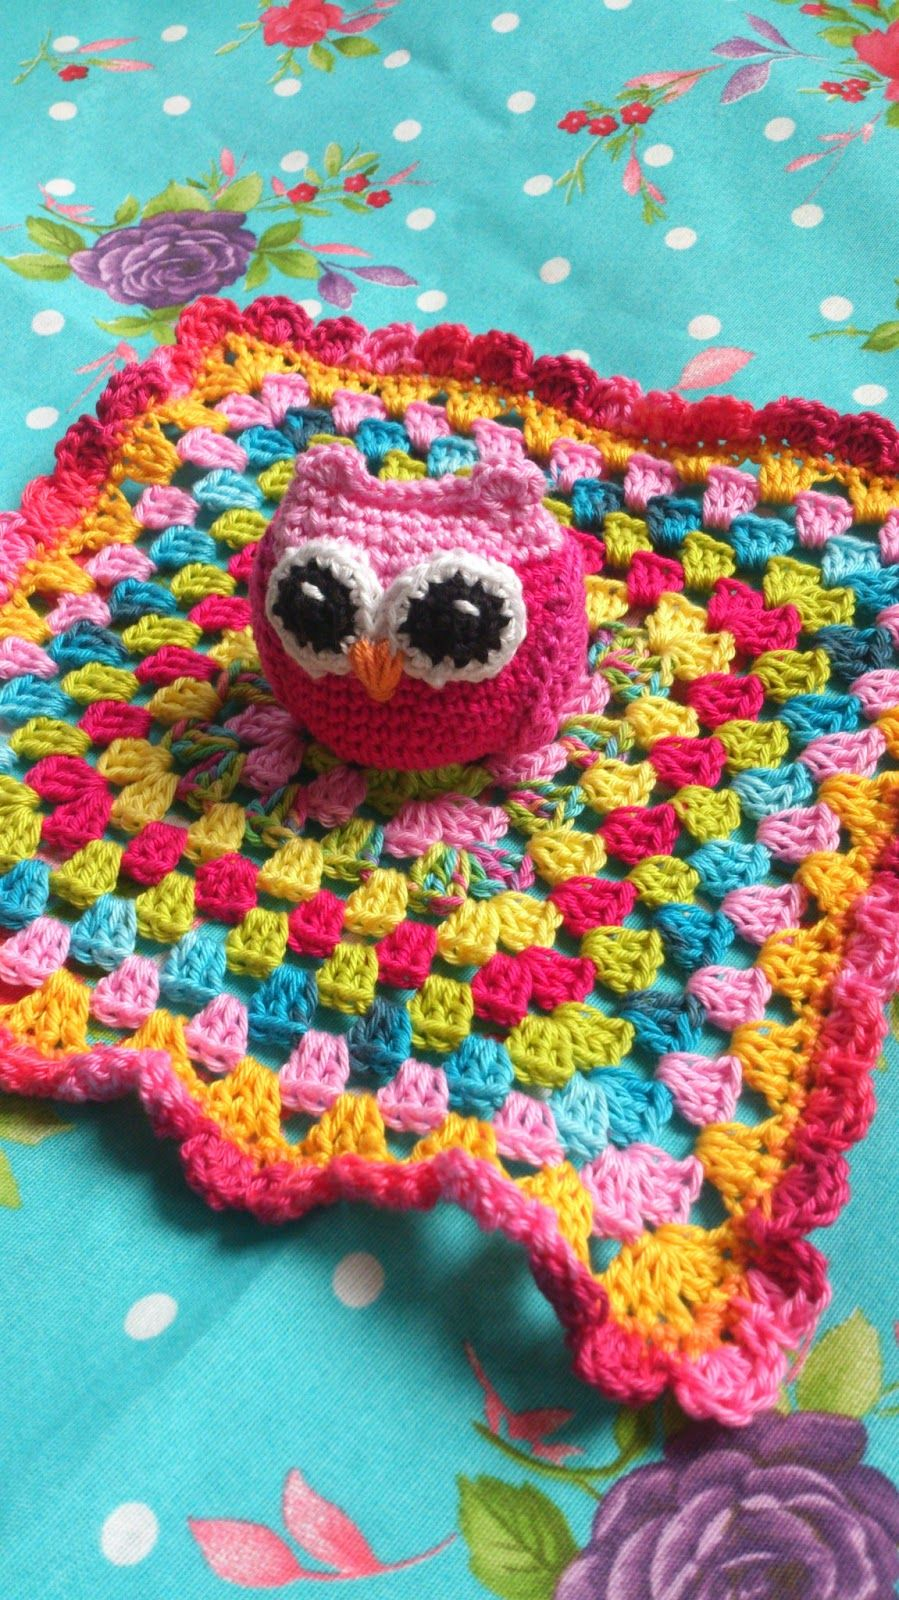 Free Crochet Lovey Pattern Lolaishooked Patroon Uiltjestutteldoekje Free Pattern Crochet